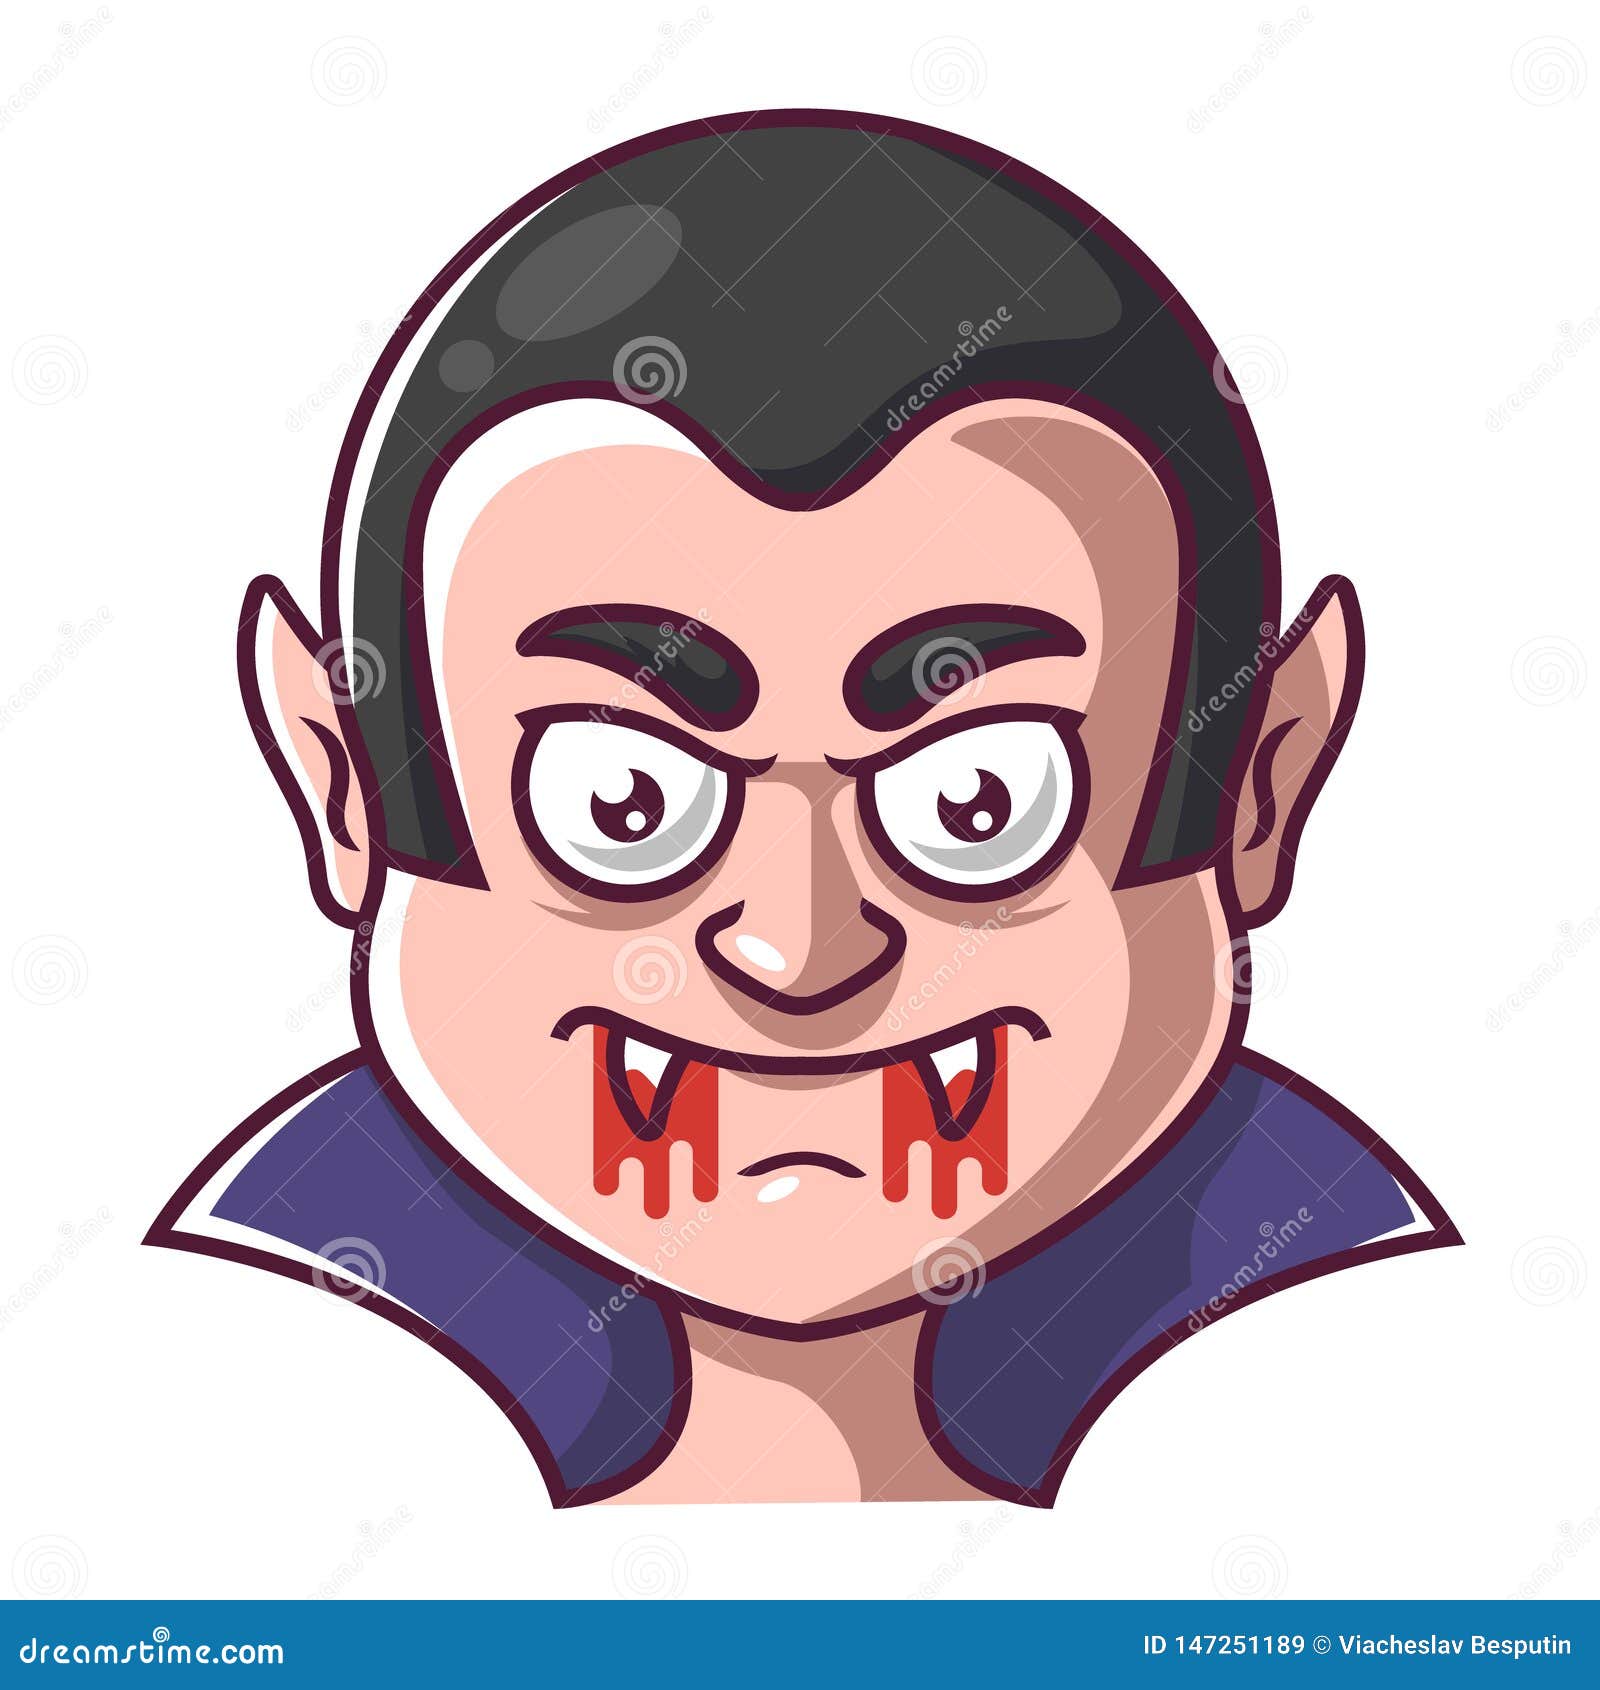 Face of a vampire dracula stock vector. Illustration of dark - 147251189